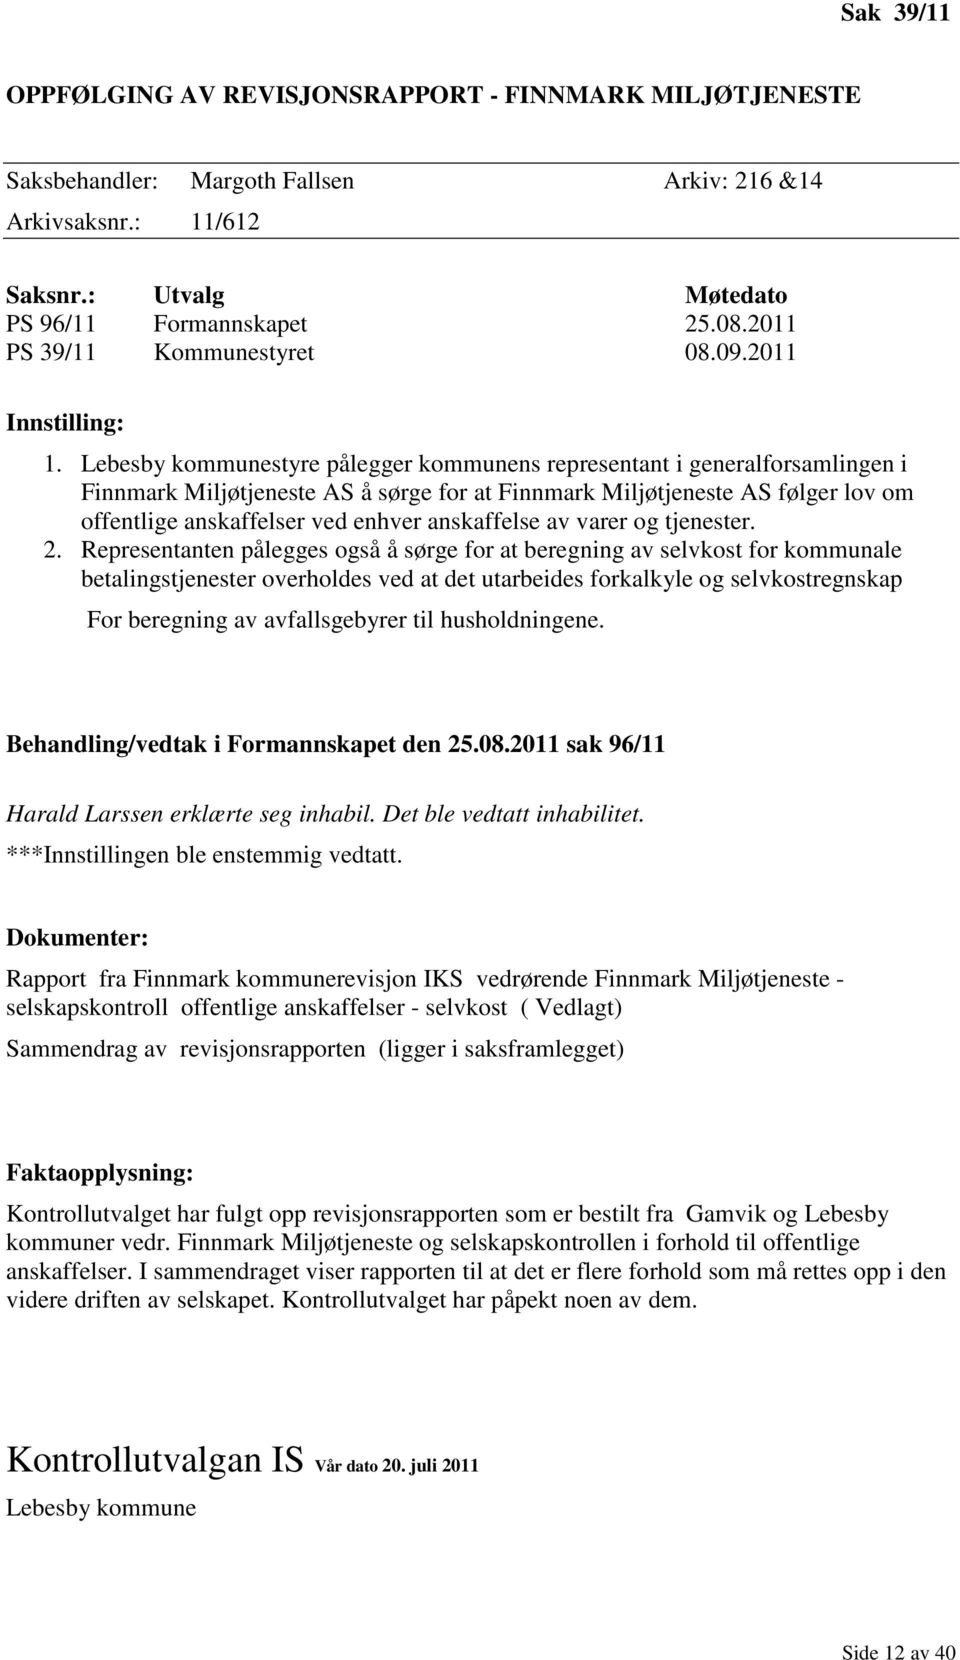 Lebesby kommunestyre pålegger kommunens representant i generalforsamlingen i Finnmark Miljøtjeneste AS å sørge for at Finnmark Miljøtjeneste AS følger lov om offentlige anskaffelser ved enhver